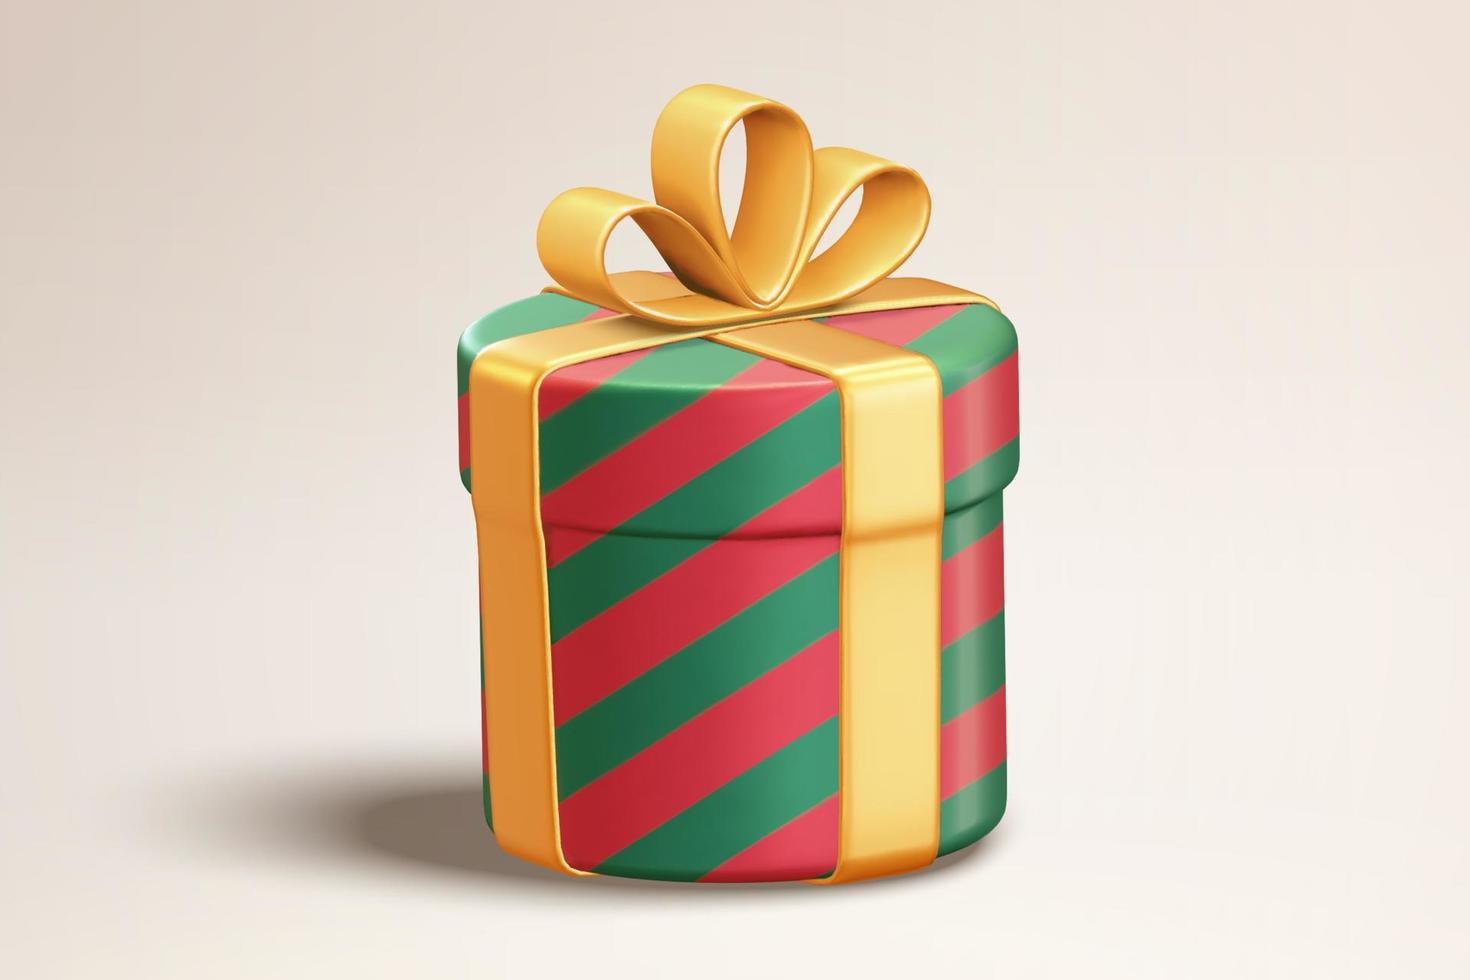 Regalo de navidad envuelto en 3d. ilustración de una caja de regalo cilíndrica verde y roja con un lazo dorado en un fondo vacío vector